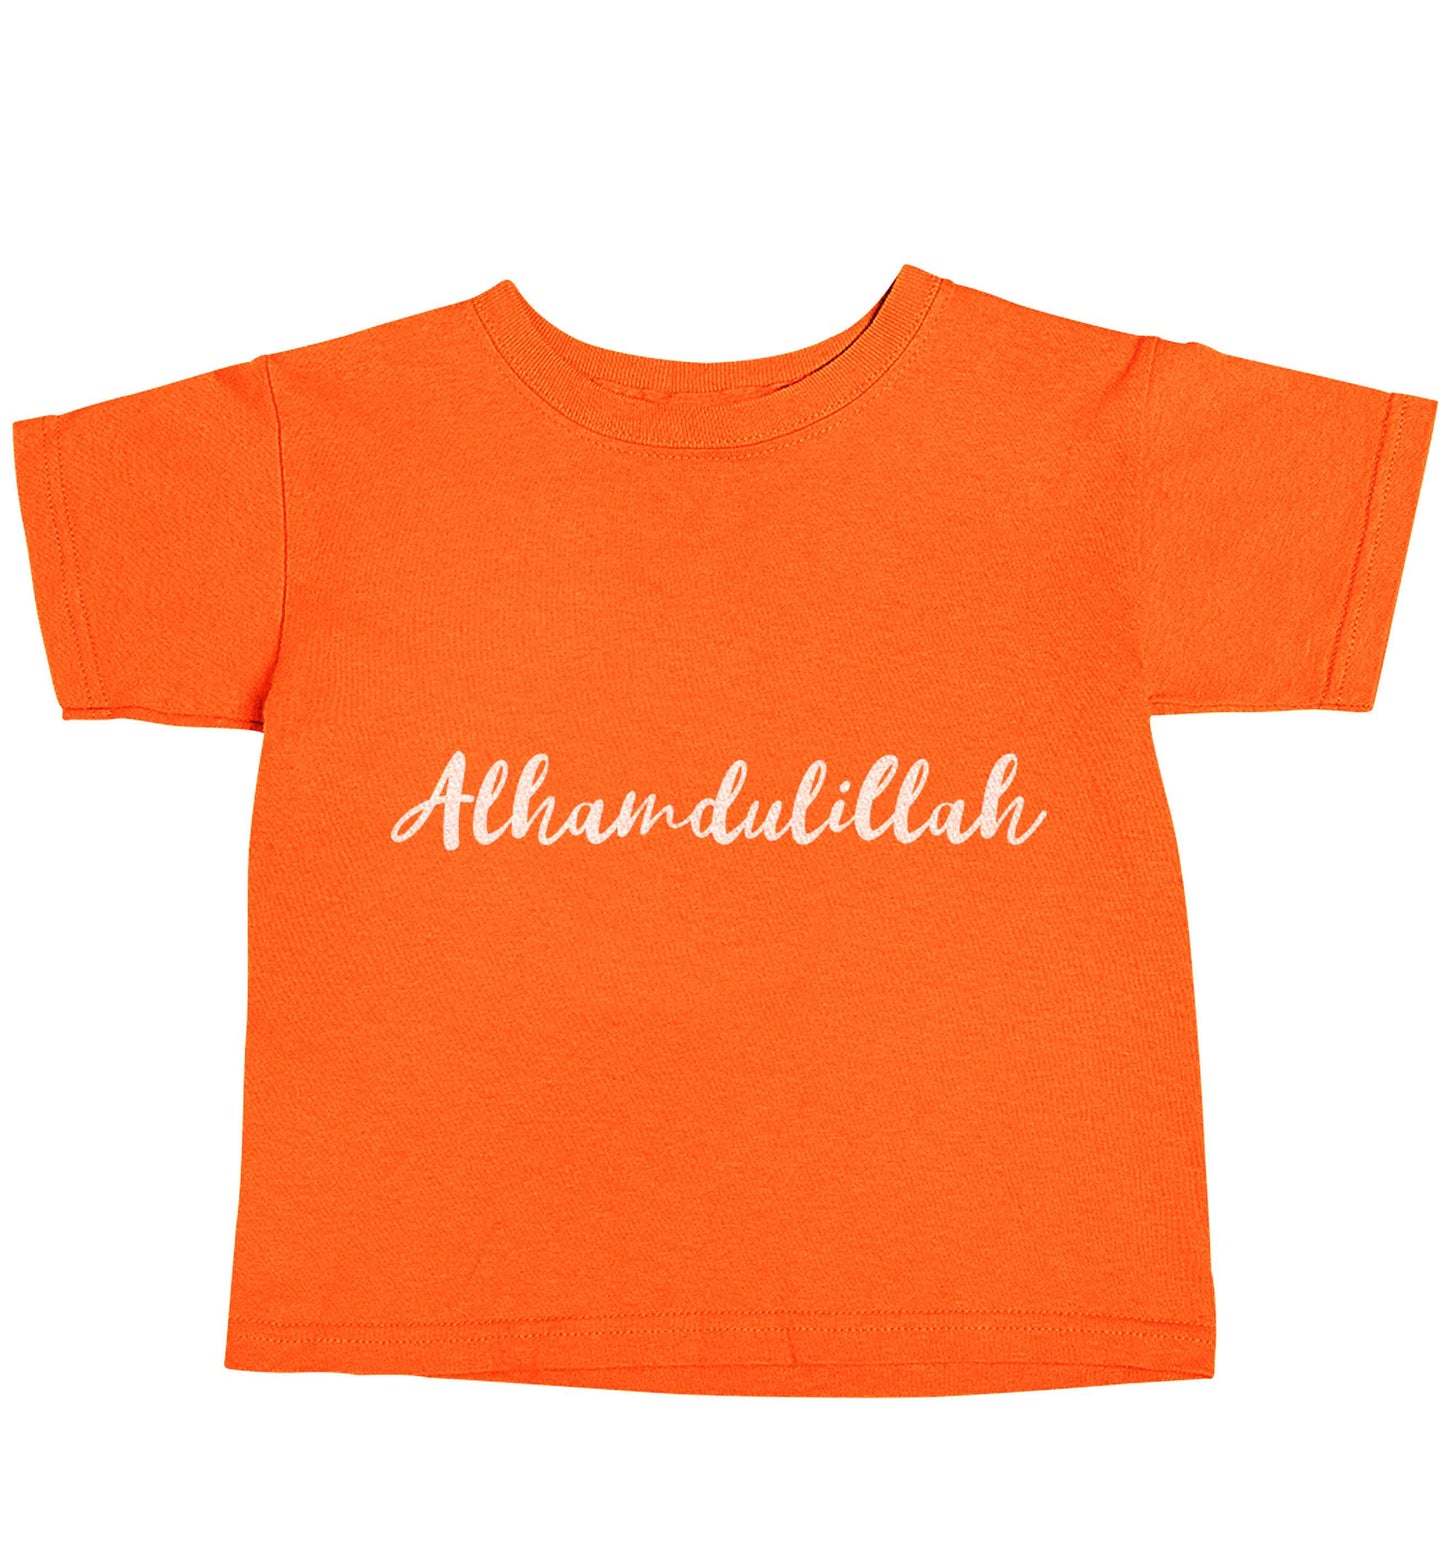 alhamdulillah orange baby toddler Tshirt 2 Years